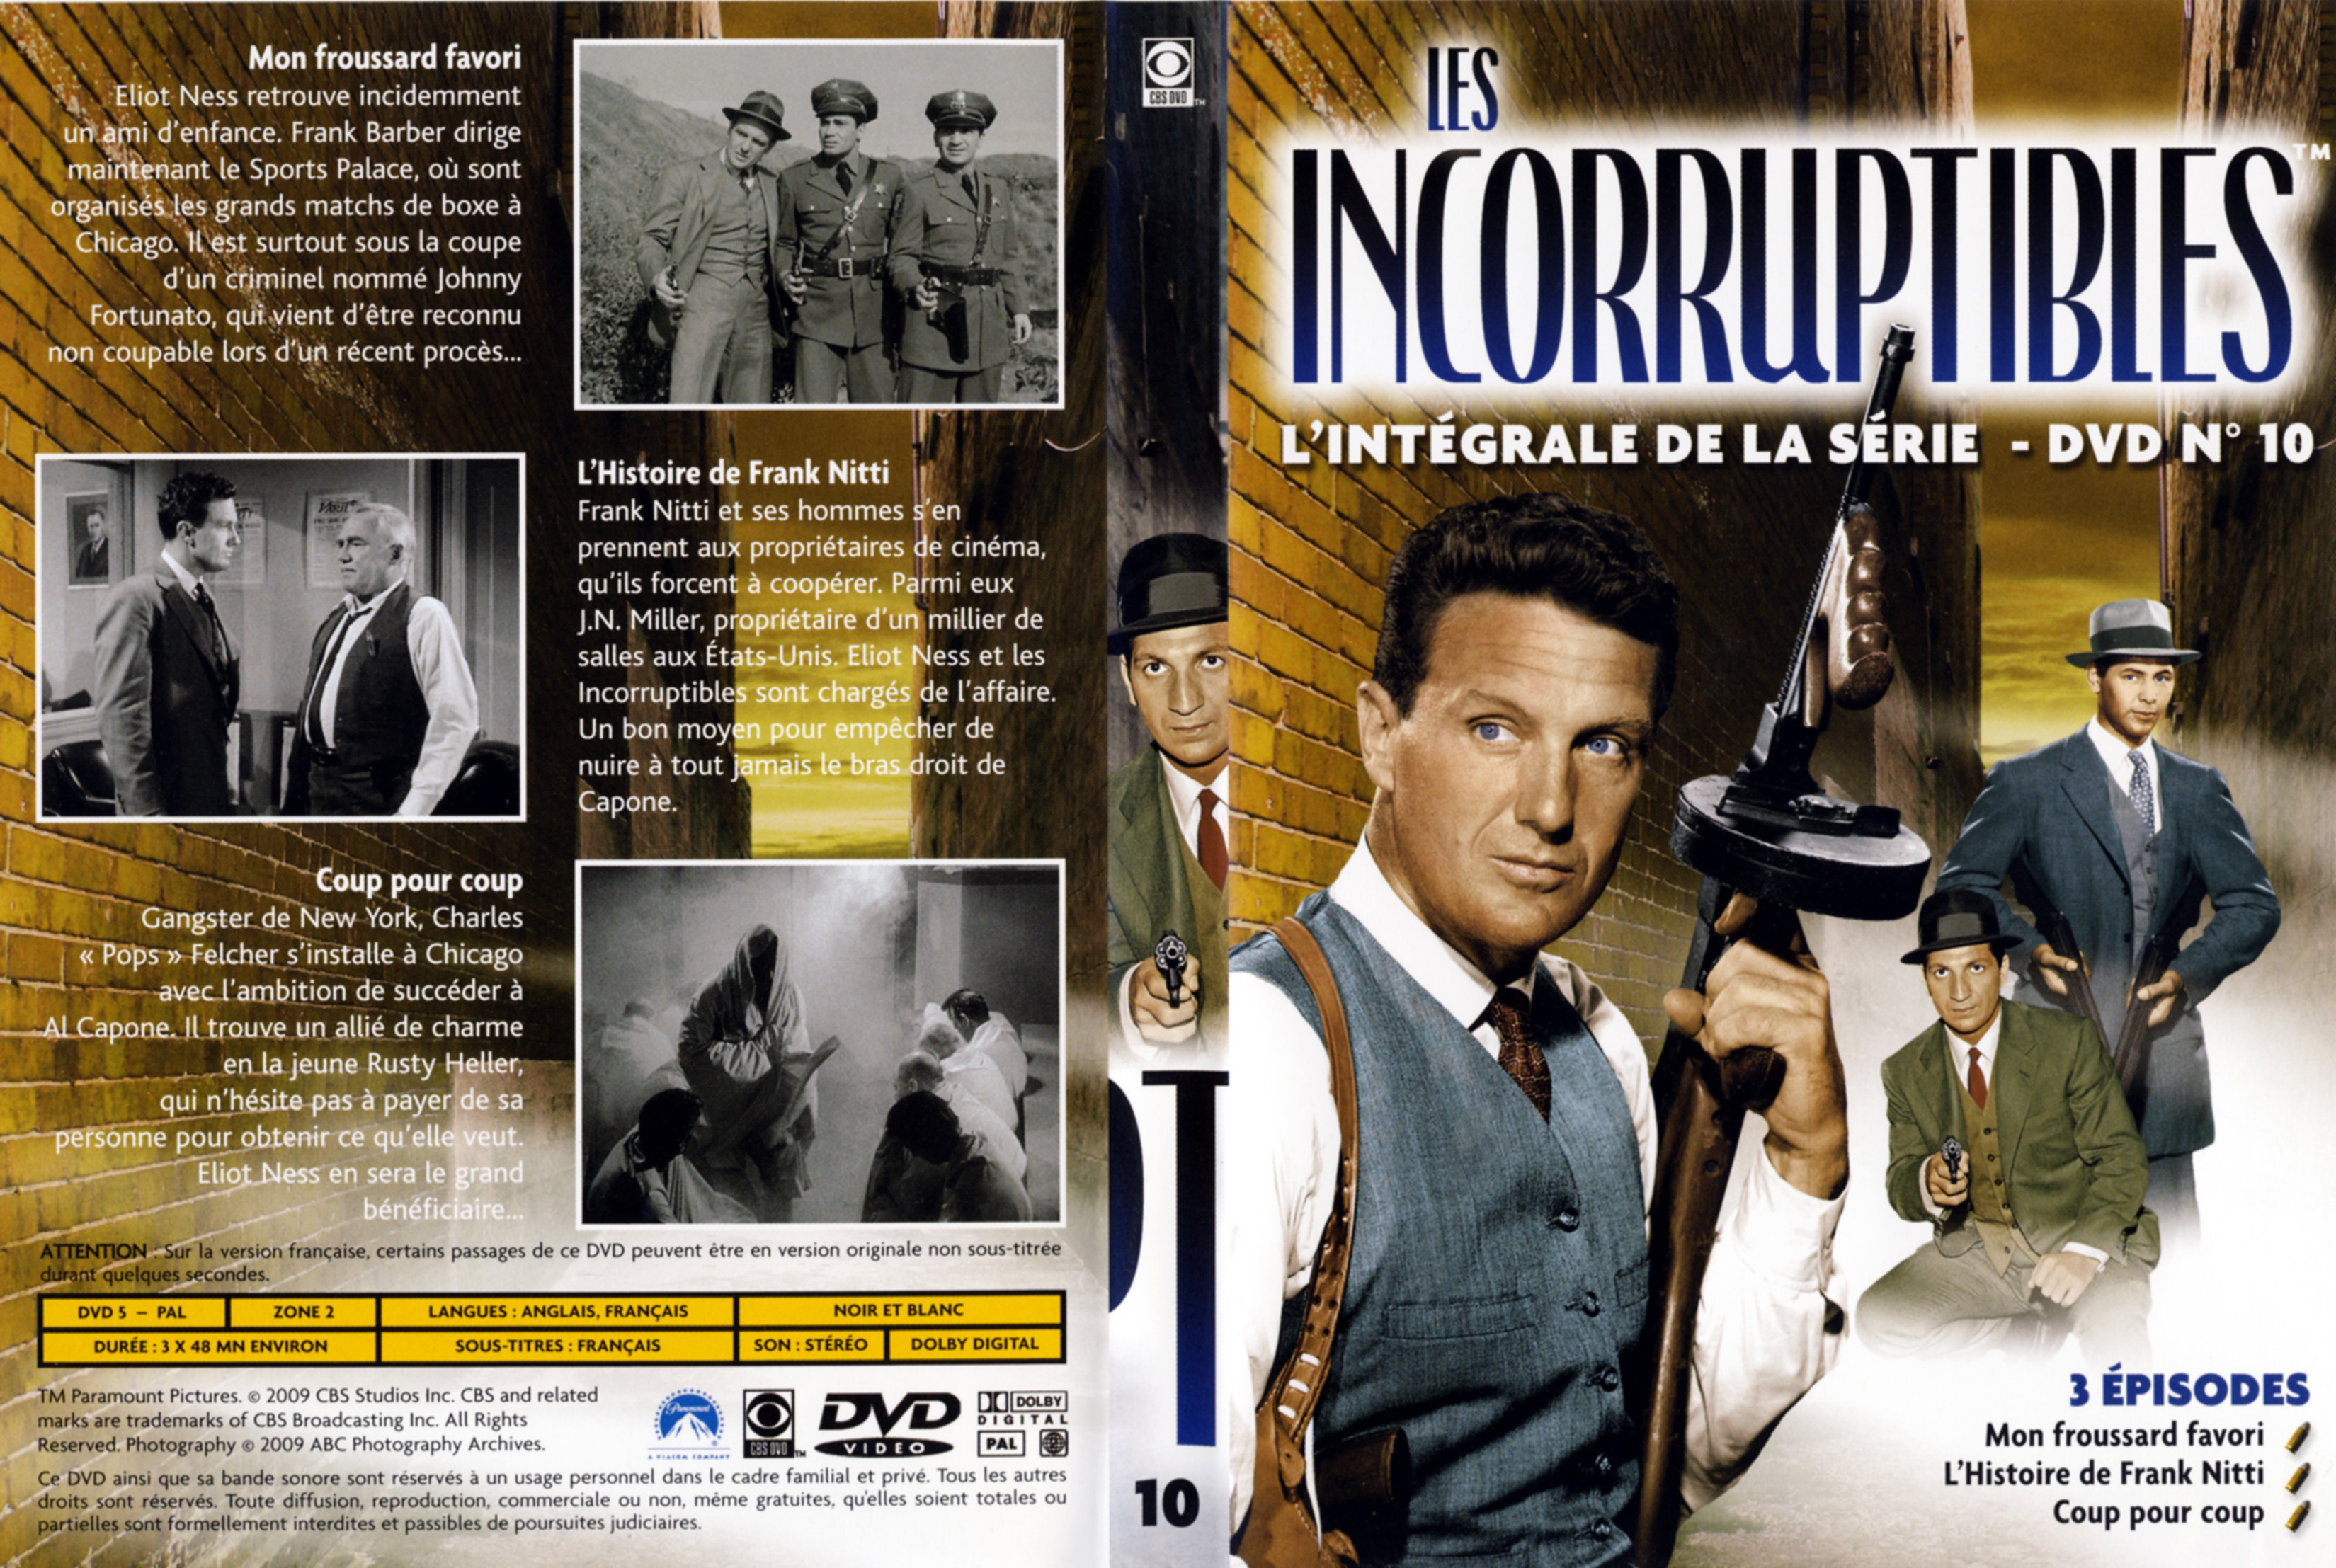 Jaquette DVD Les incorruptibles intgrale DVD 10